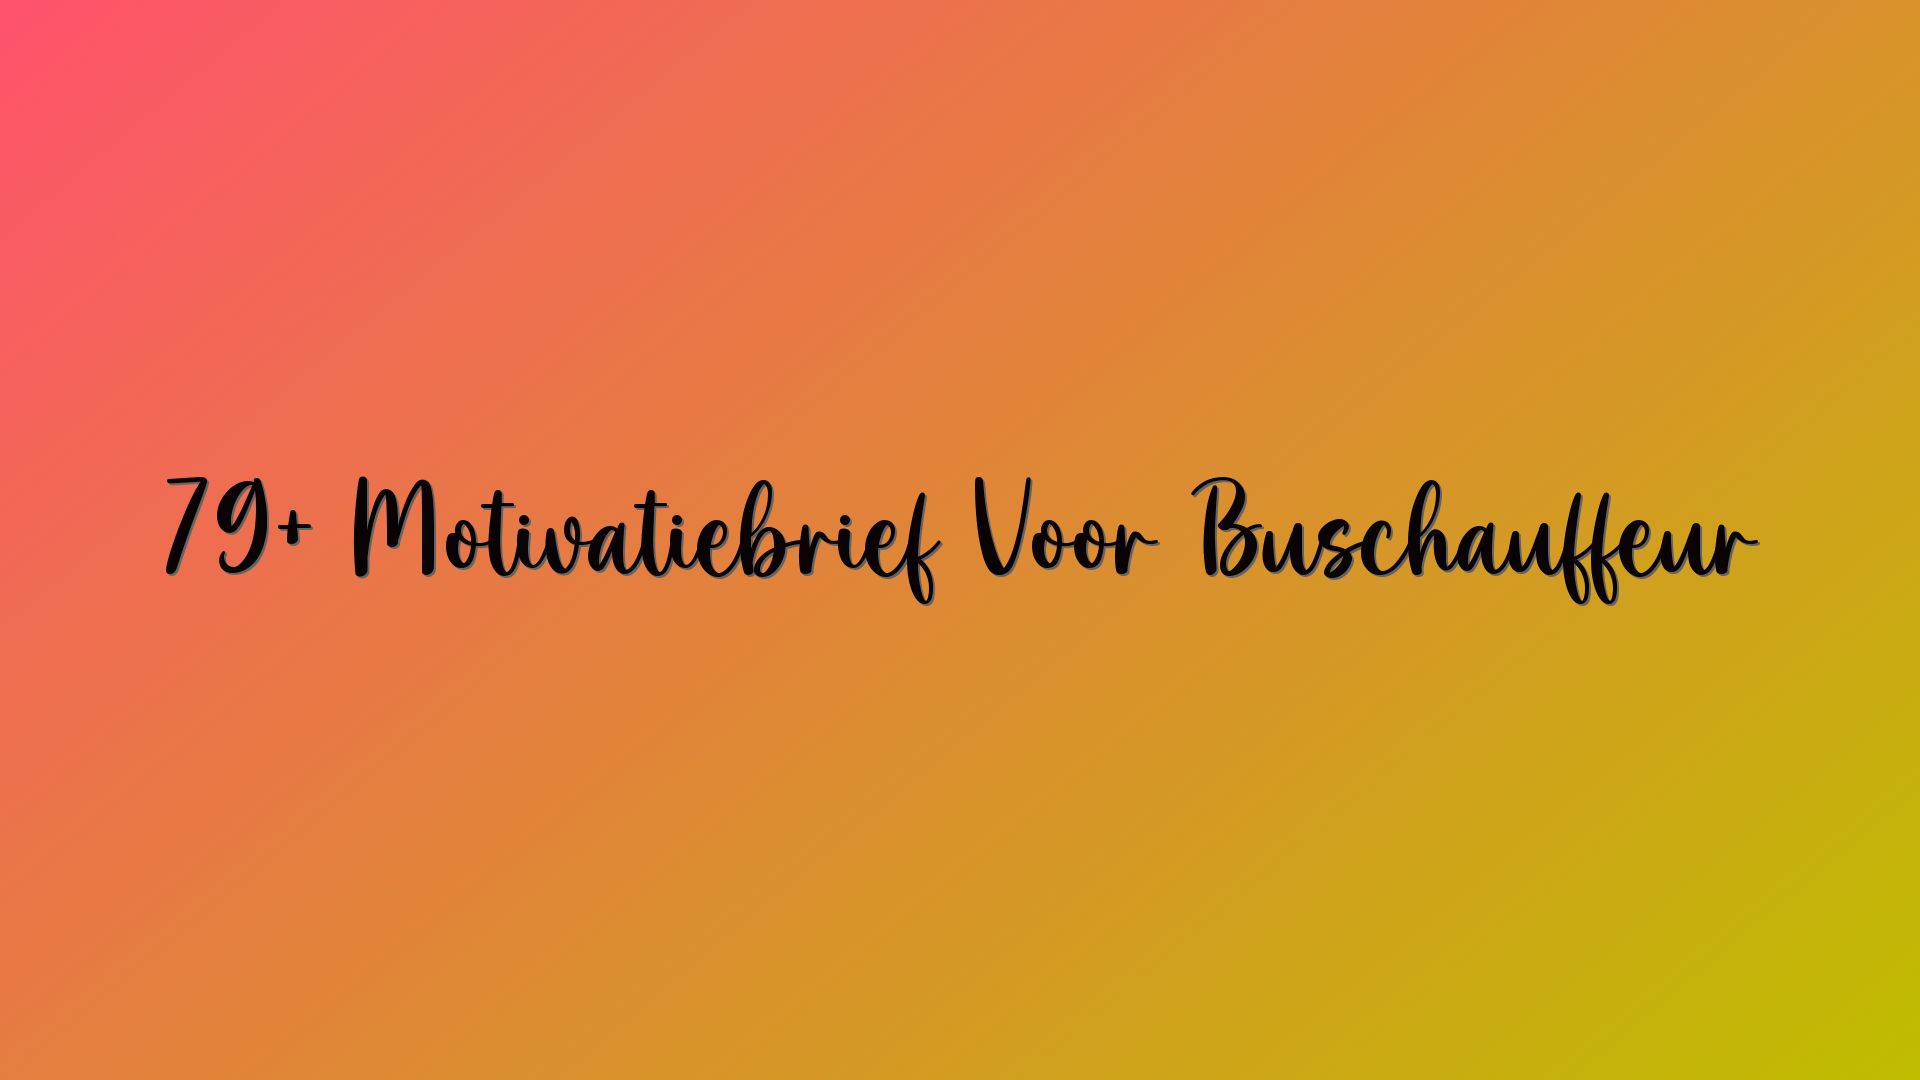 79+ Motivatiebrief Voor Buschauffeur